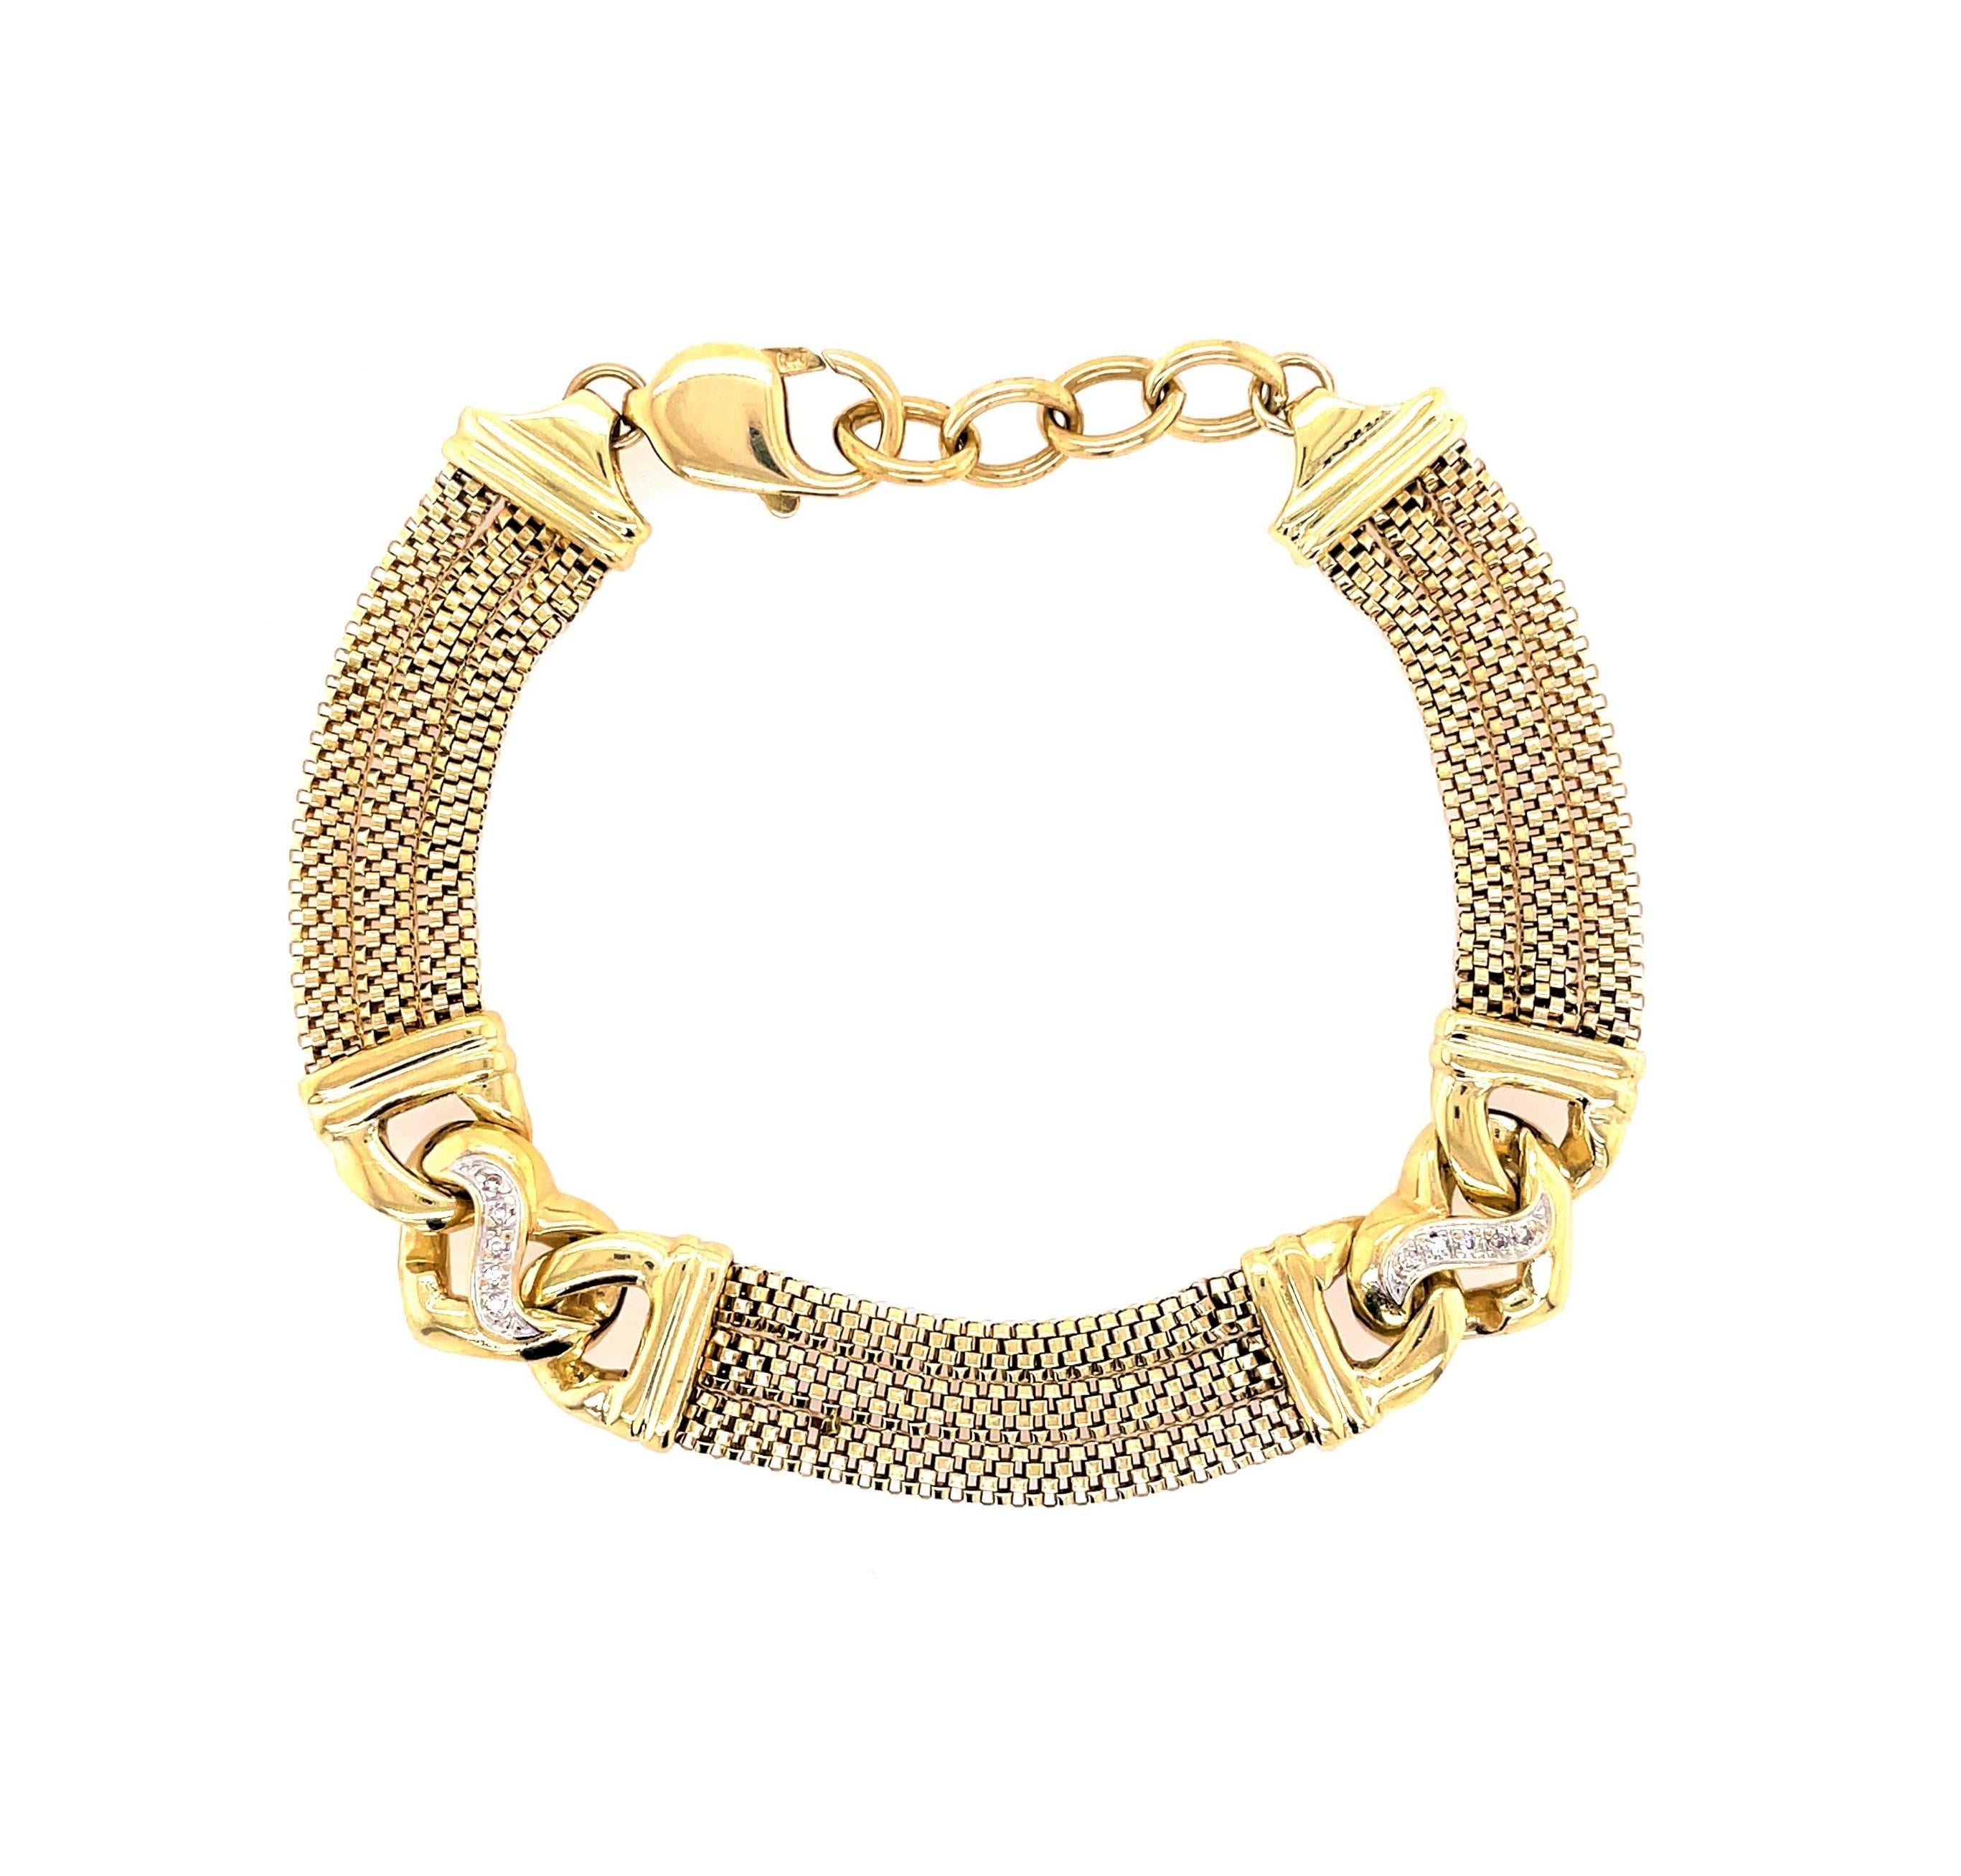 Dreifache Netzketten aus 14 Karat Gelbgold bilden dieses bezaubernde Armband, das mit zwei dekorativen Stationen aus stilvollen Goldherzen verbunden ist, die jeweils mit fünf runden .01-Diamanten für ein wenig zusätzlichen Glanz akzentuiert sind.